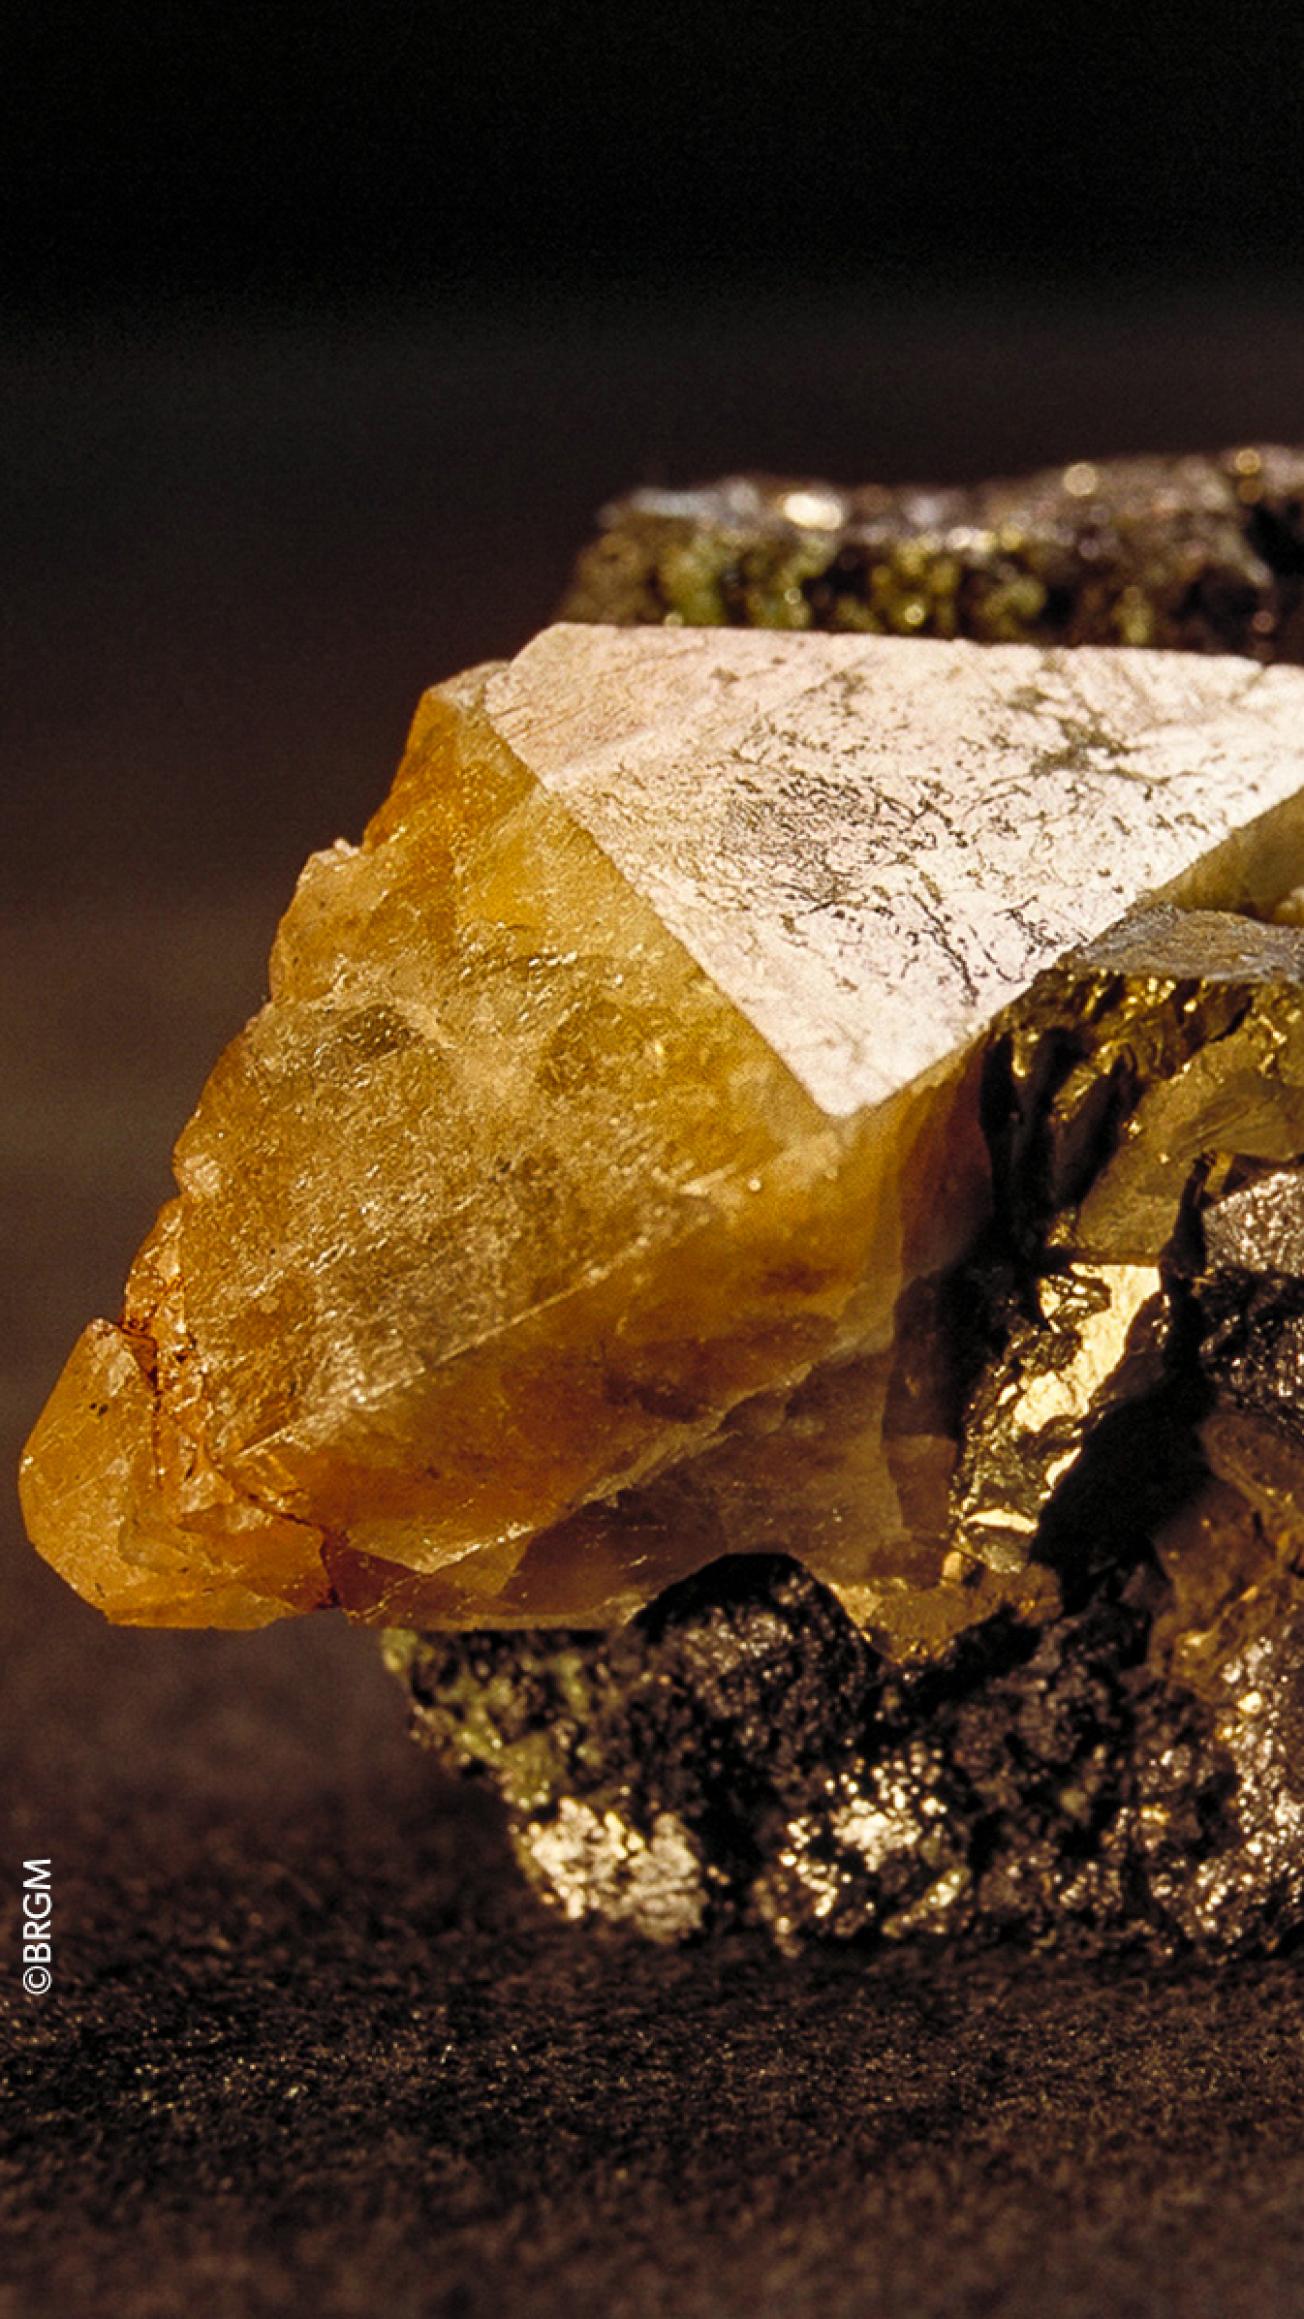 A scheelite sample